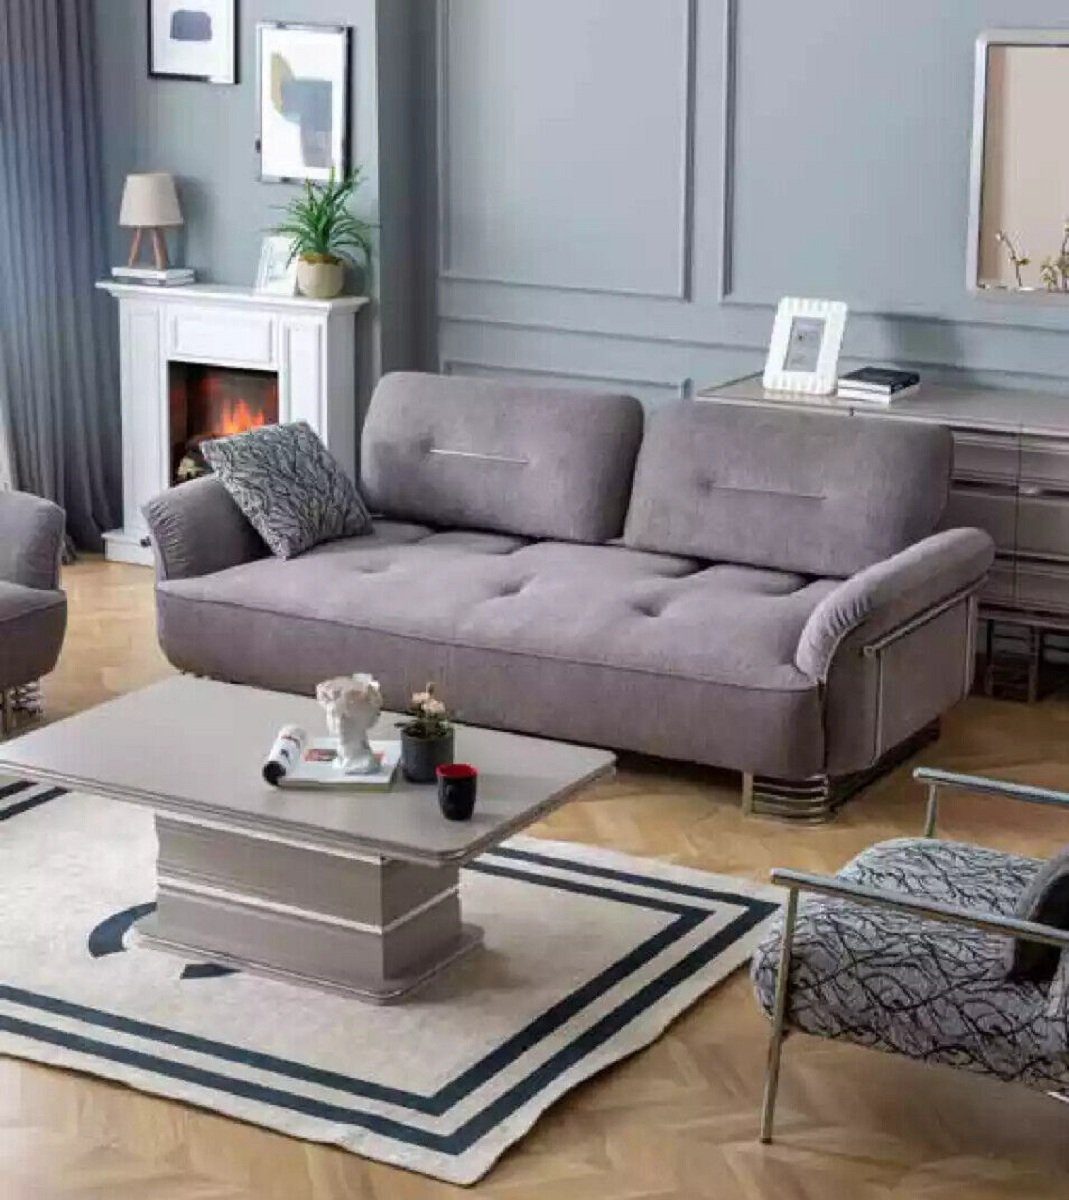 JVmoebel 3-Sitzer Sofa 3 Sitzer Textil Wohnzimmer Design Modern Neu Luxus, 1 Teile, Made in Europa